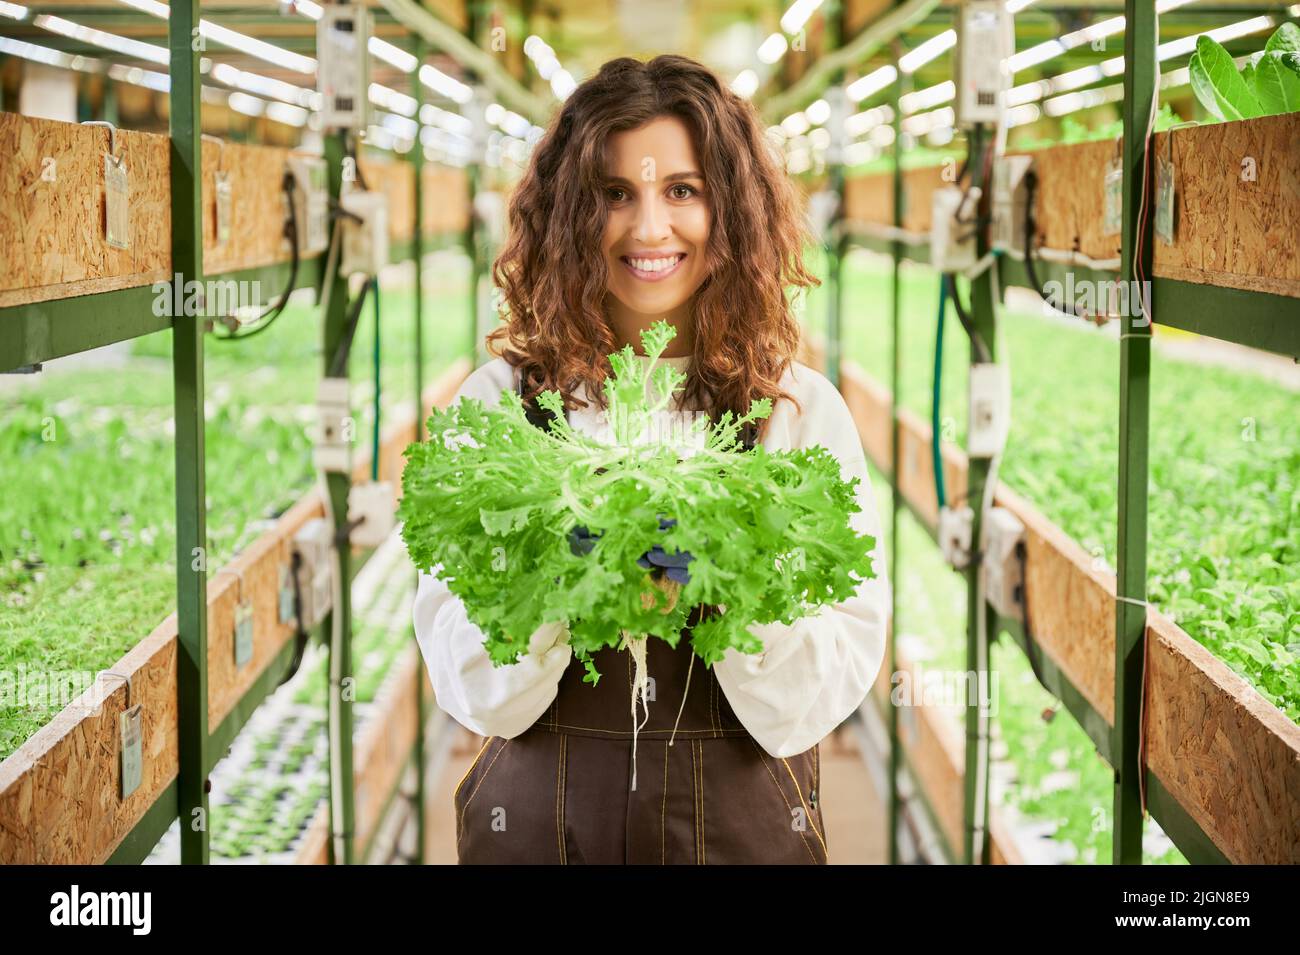 Fröhliche Gärtnerin, die die Kamera anschaut und lächelt, während sie die grüne Blattpflanze hält. Junge Frau, die im Gang zwischen Regalen mit Pflanzen im Gewächshaus steht. Stockfoto